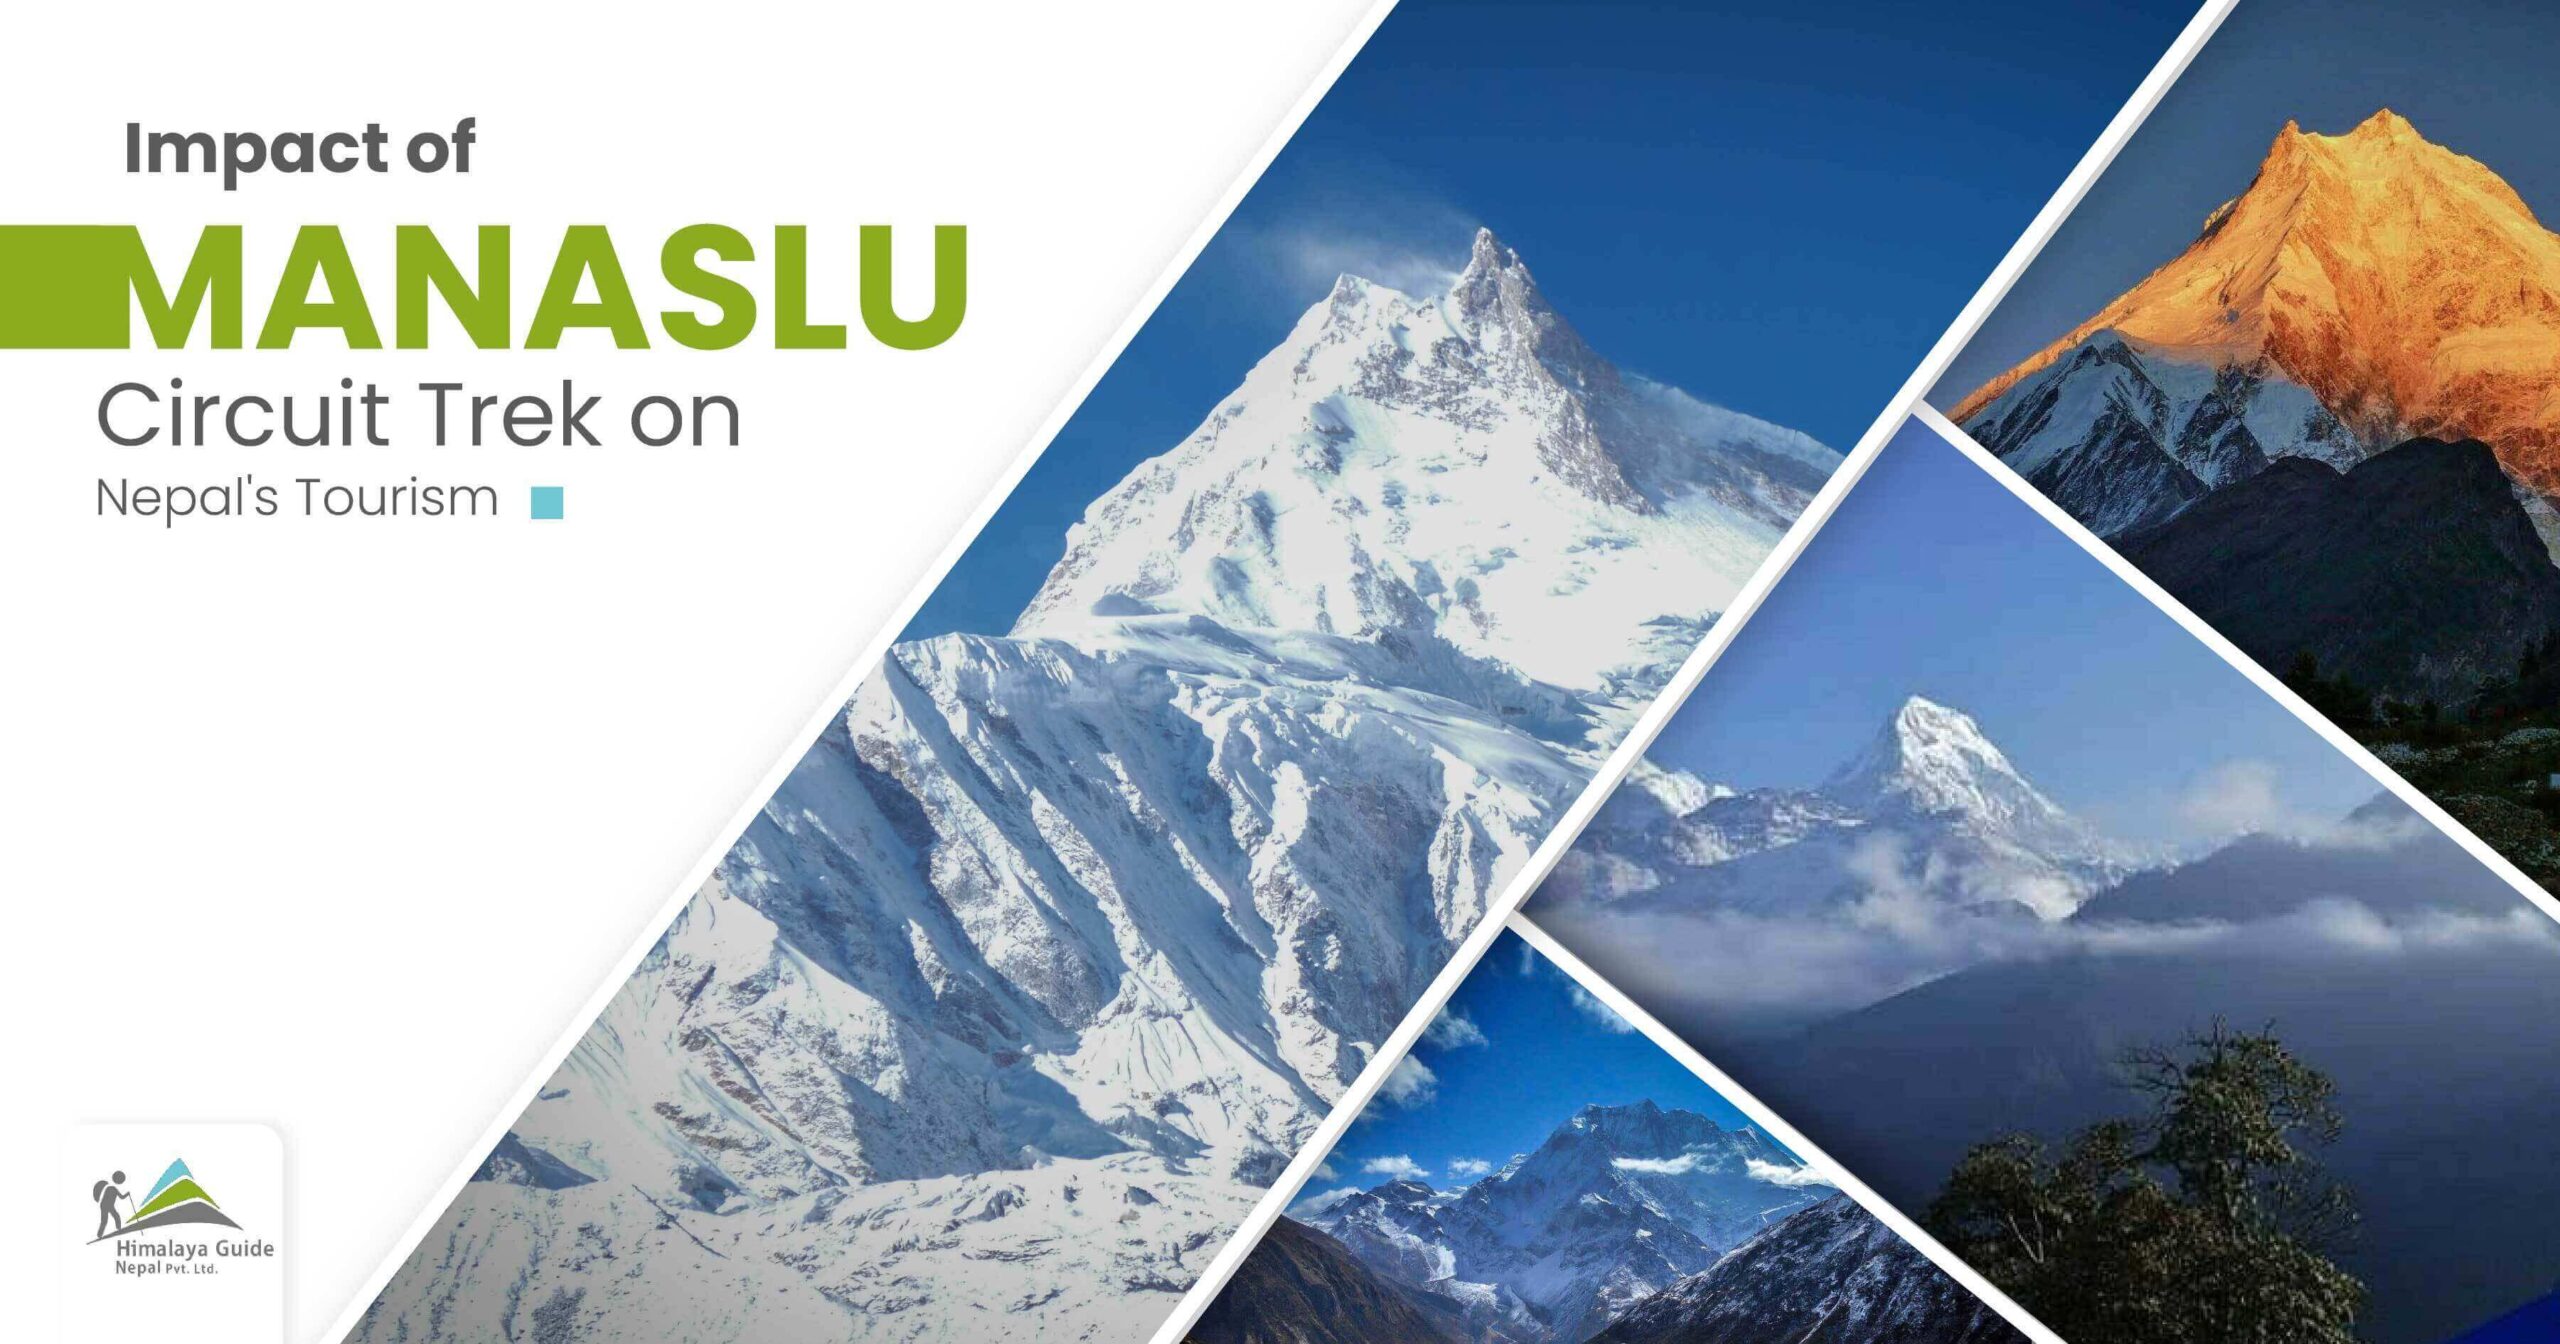 Manaslu Circuit Trek on Nepal's Tourism